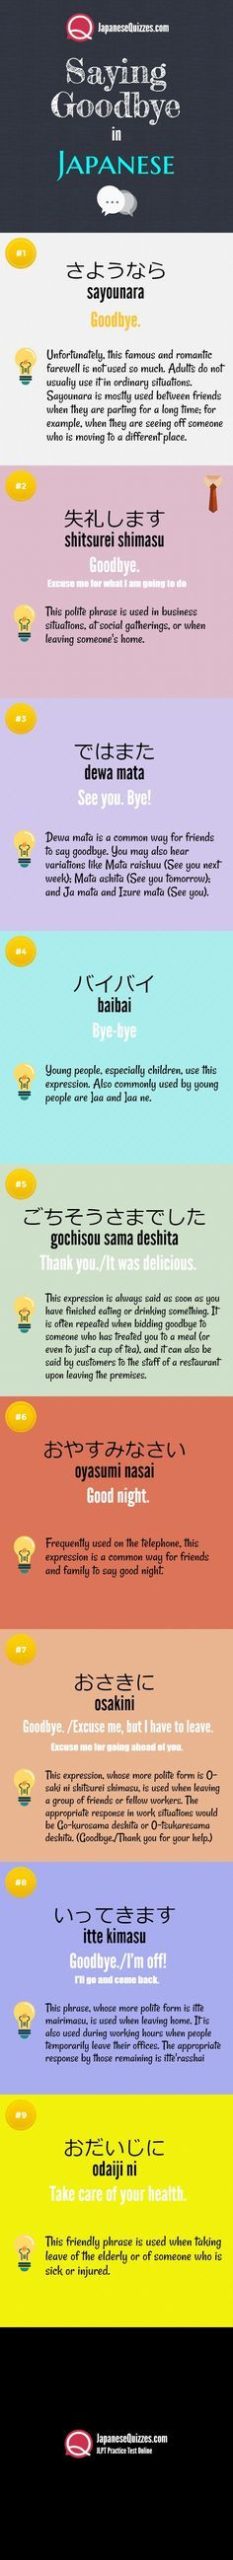 10 طرق لقول وداعا باللغة اليابانية